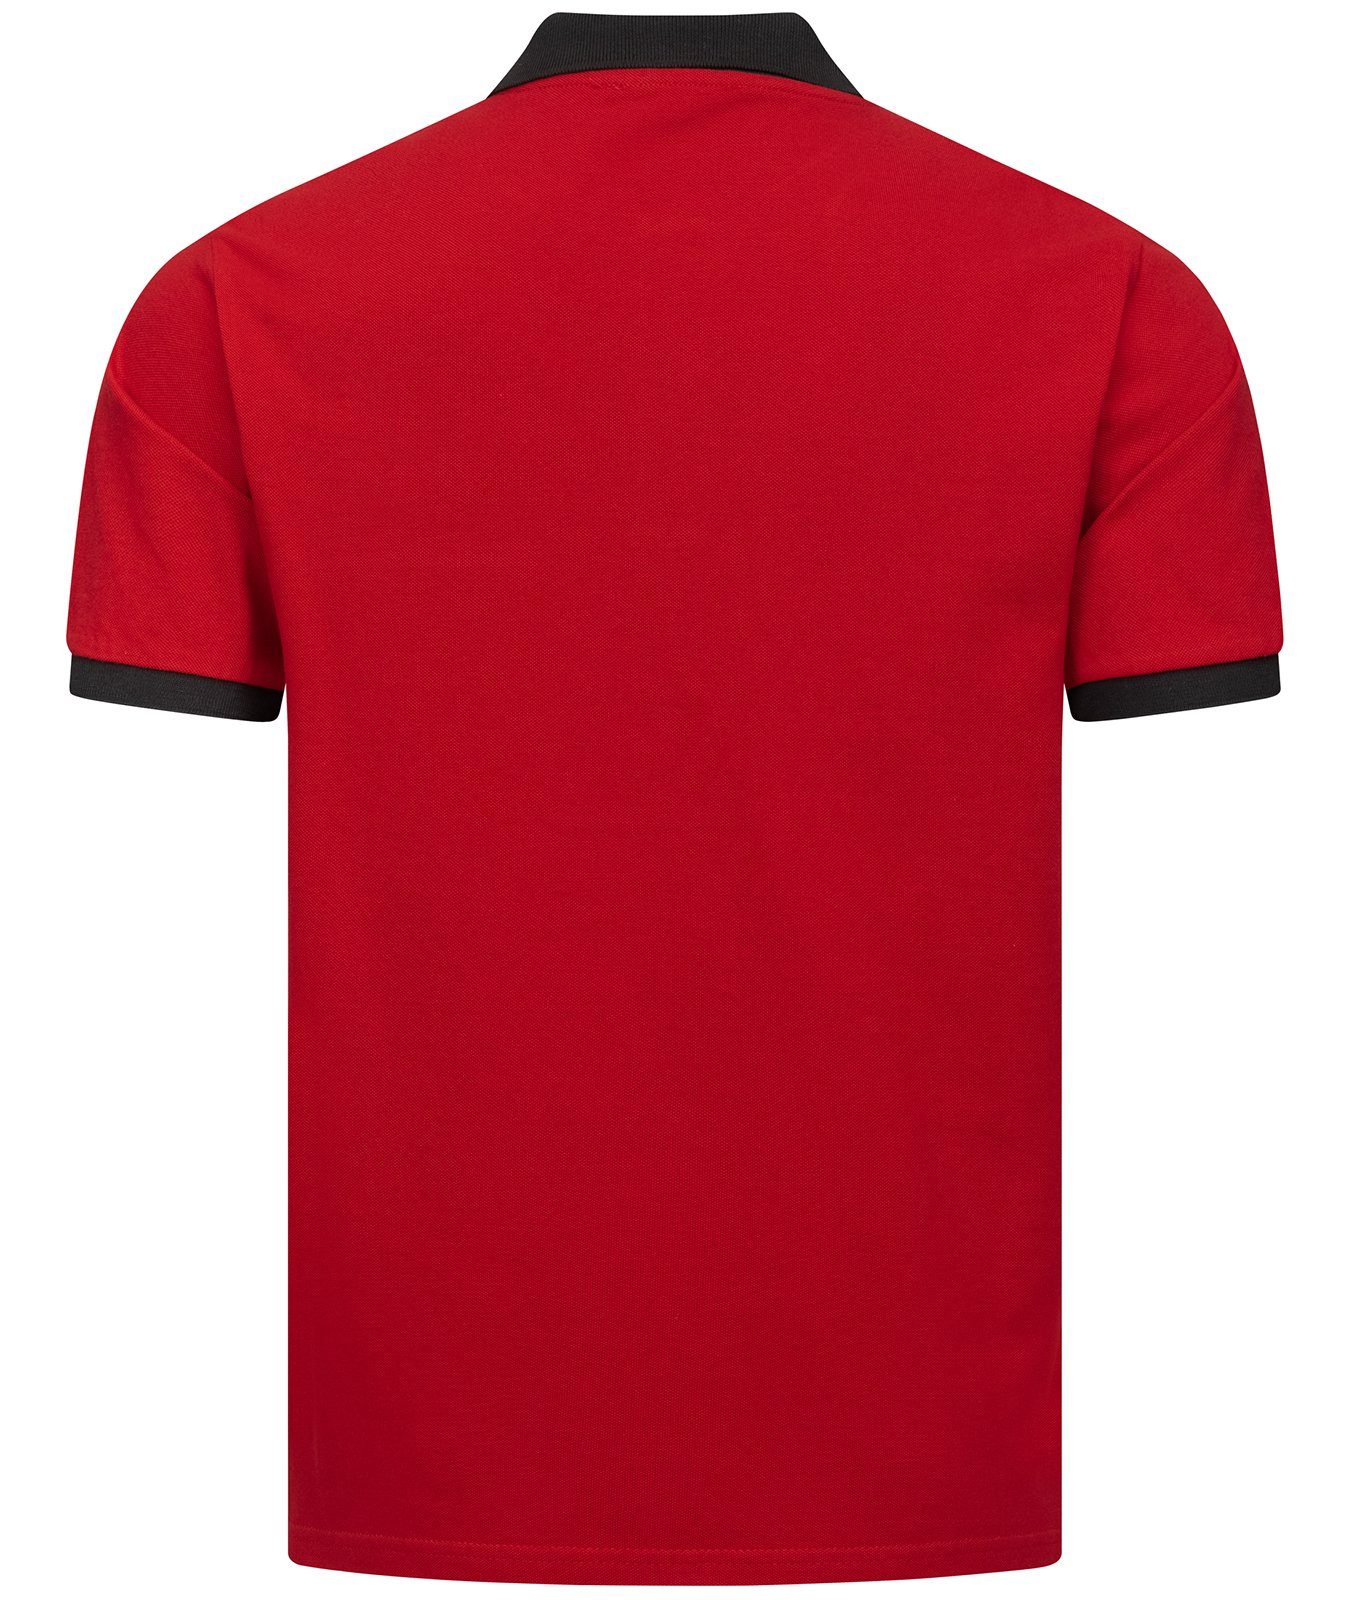 Creek H-306 Poloshirt Rock Herren Rot T-Shirt mit Polokragen